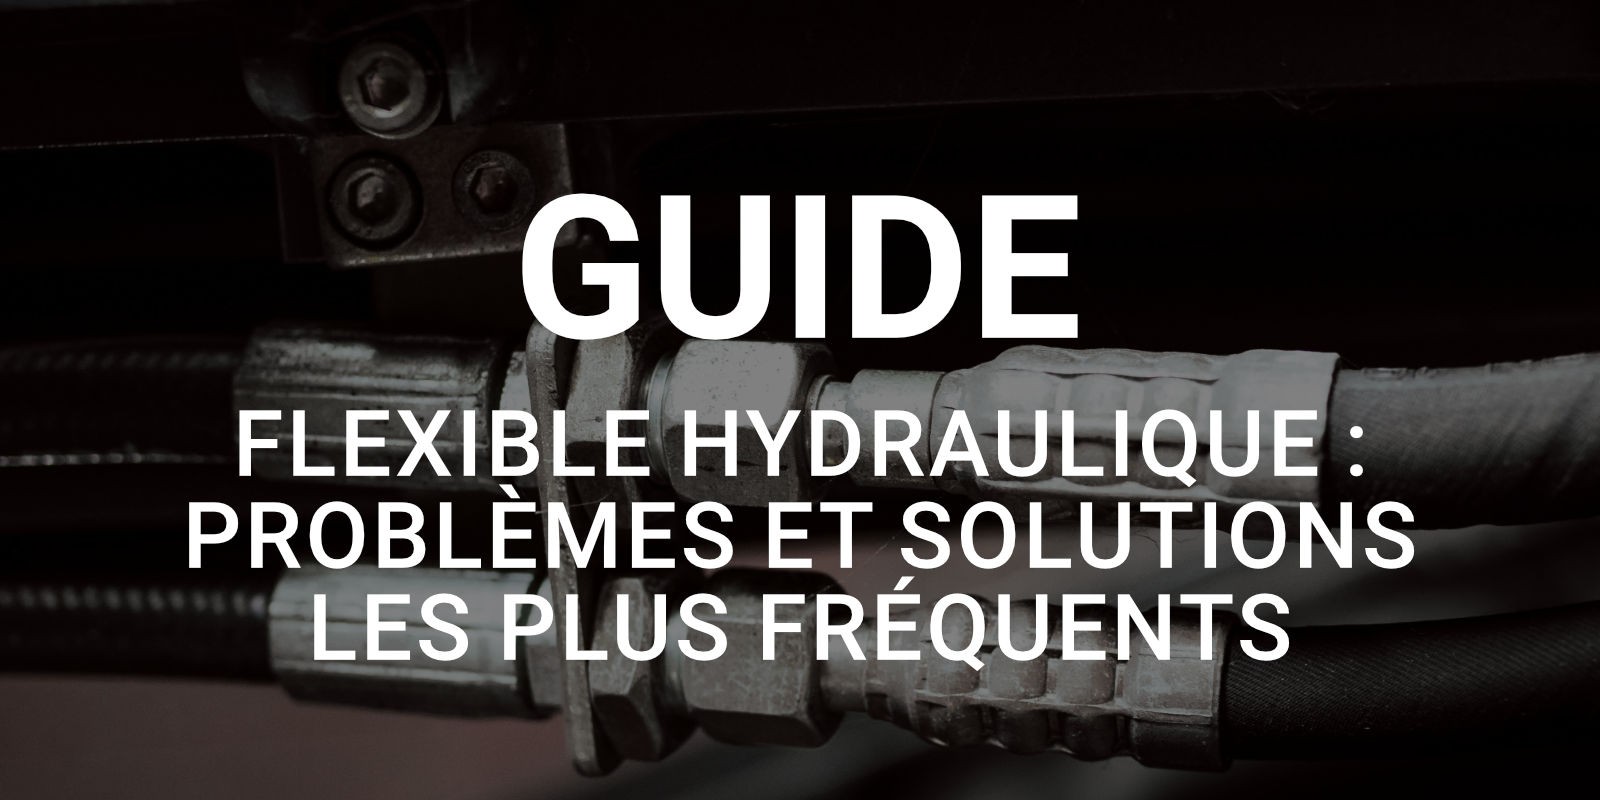 Flexible hydraulique : problèmes et solutions les plus fréquents